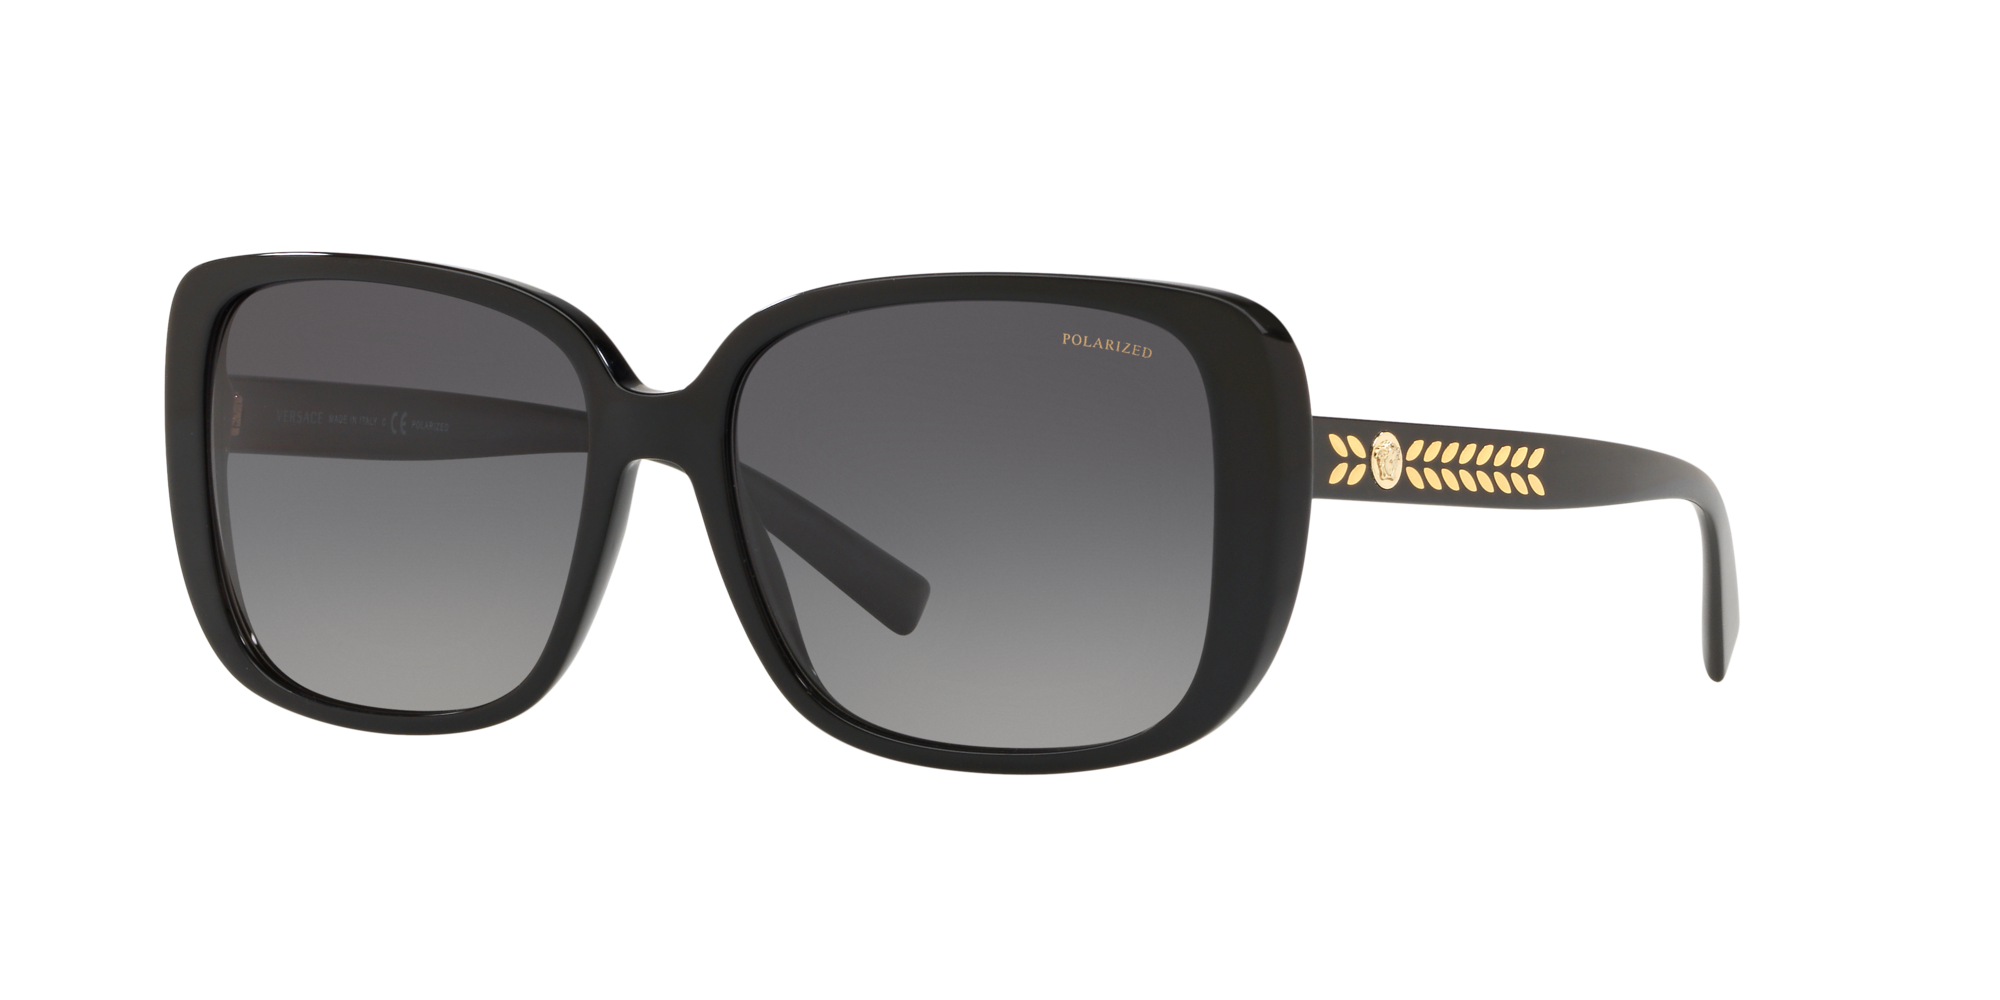 Details about  / Versace Shades Sunglasses 4063 B 461//73 b   67 20 115 No Case Read Description